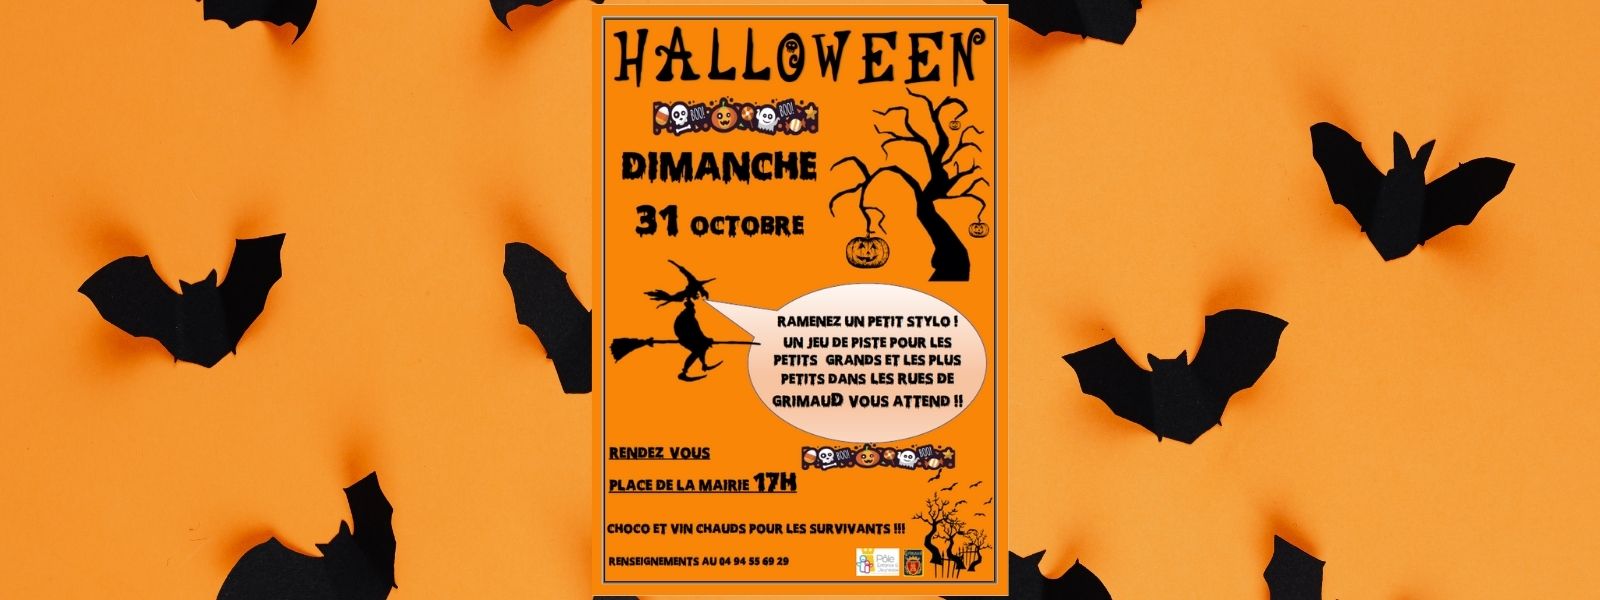 Sunday October 31, 2021: Halloween in Grimaud